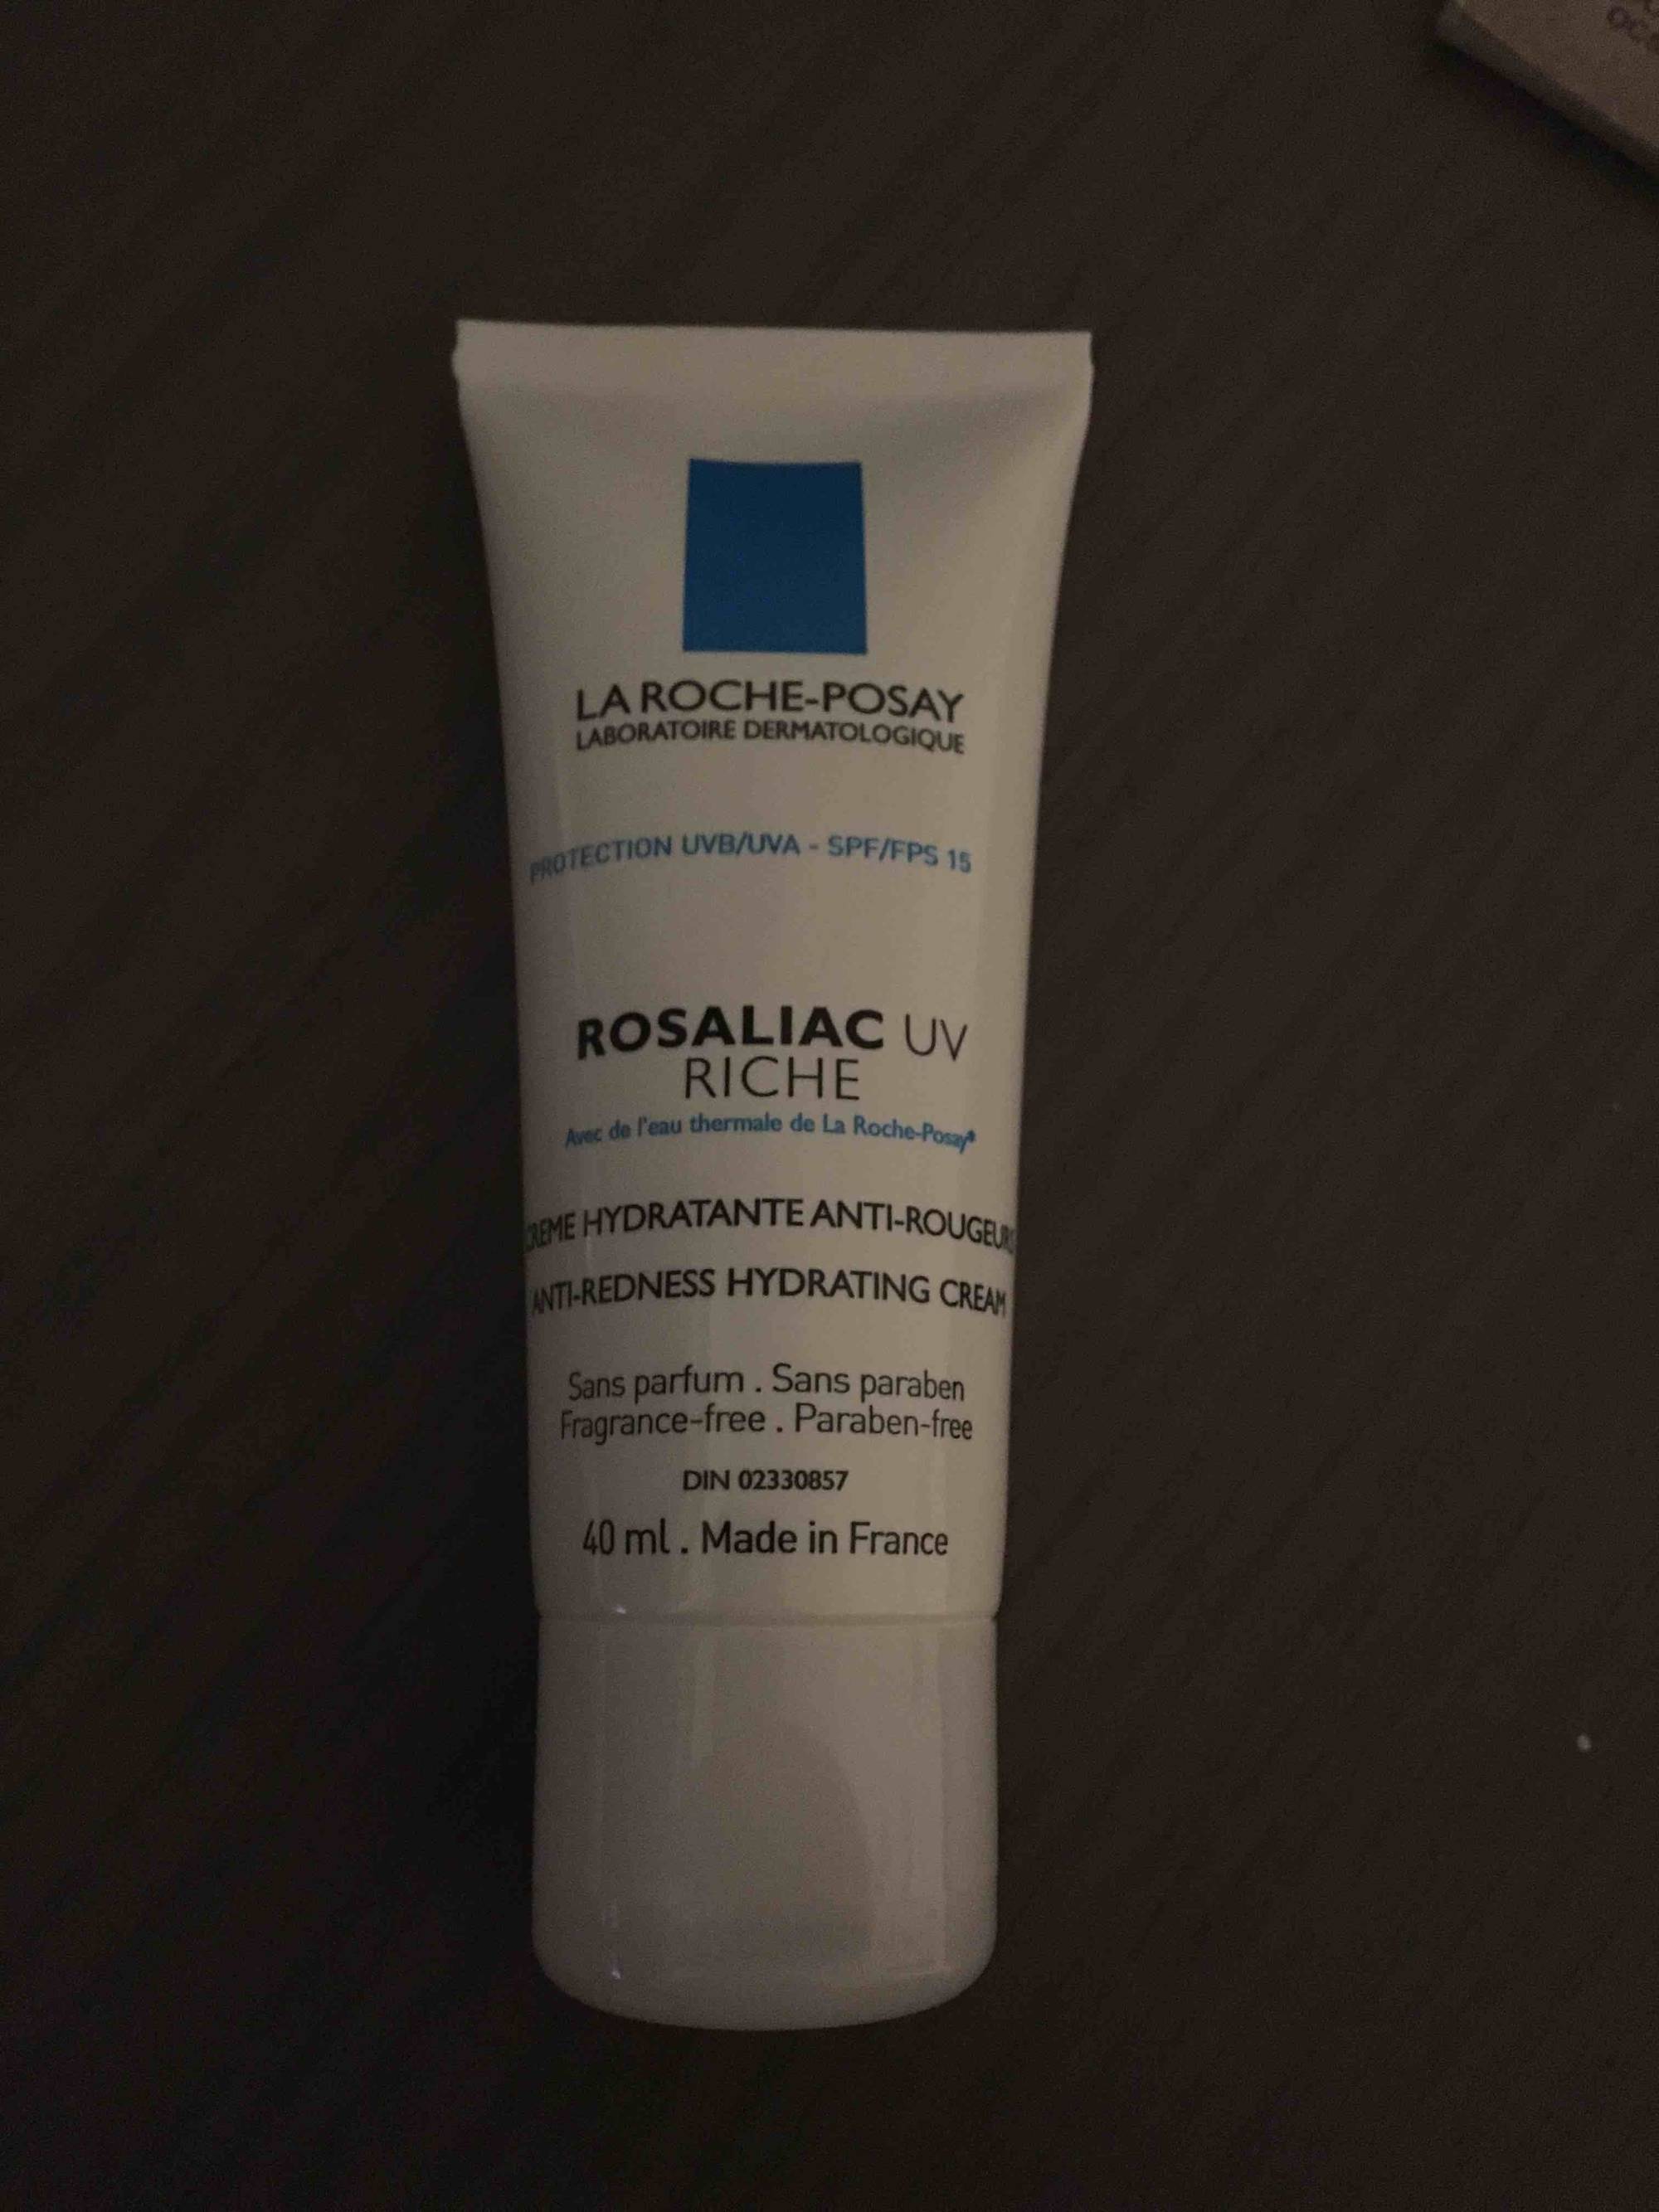 LA ROCHE-POSAY - Rosaliac Uv Riche - Crème hydratante anti-rougeur